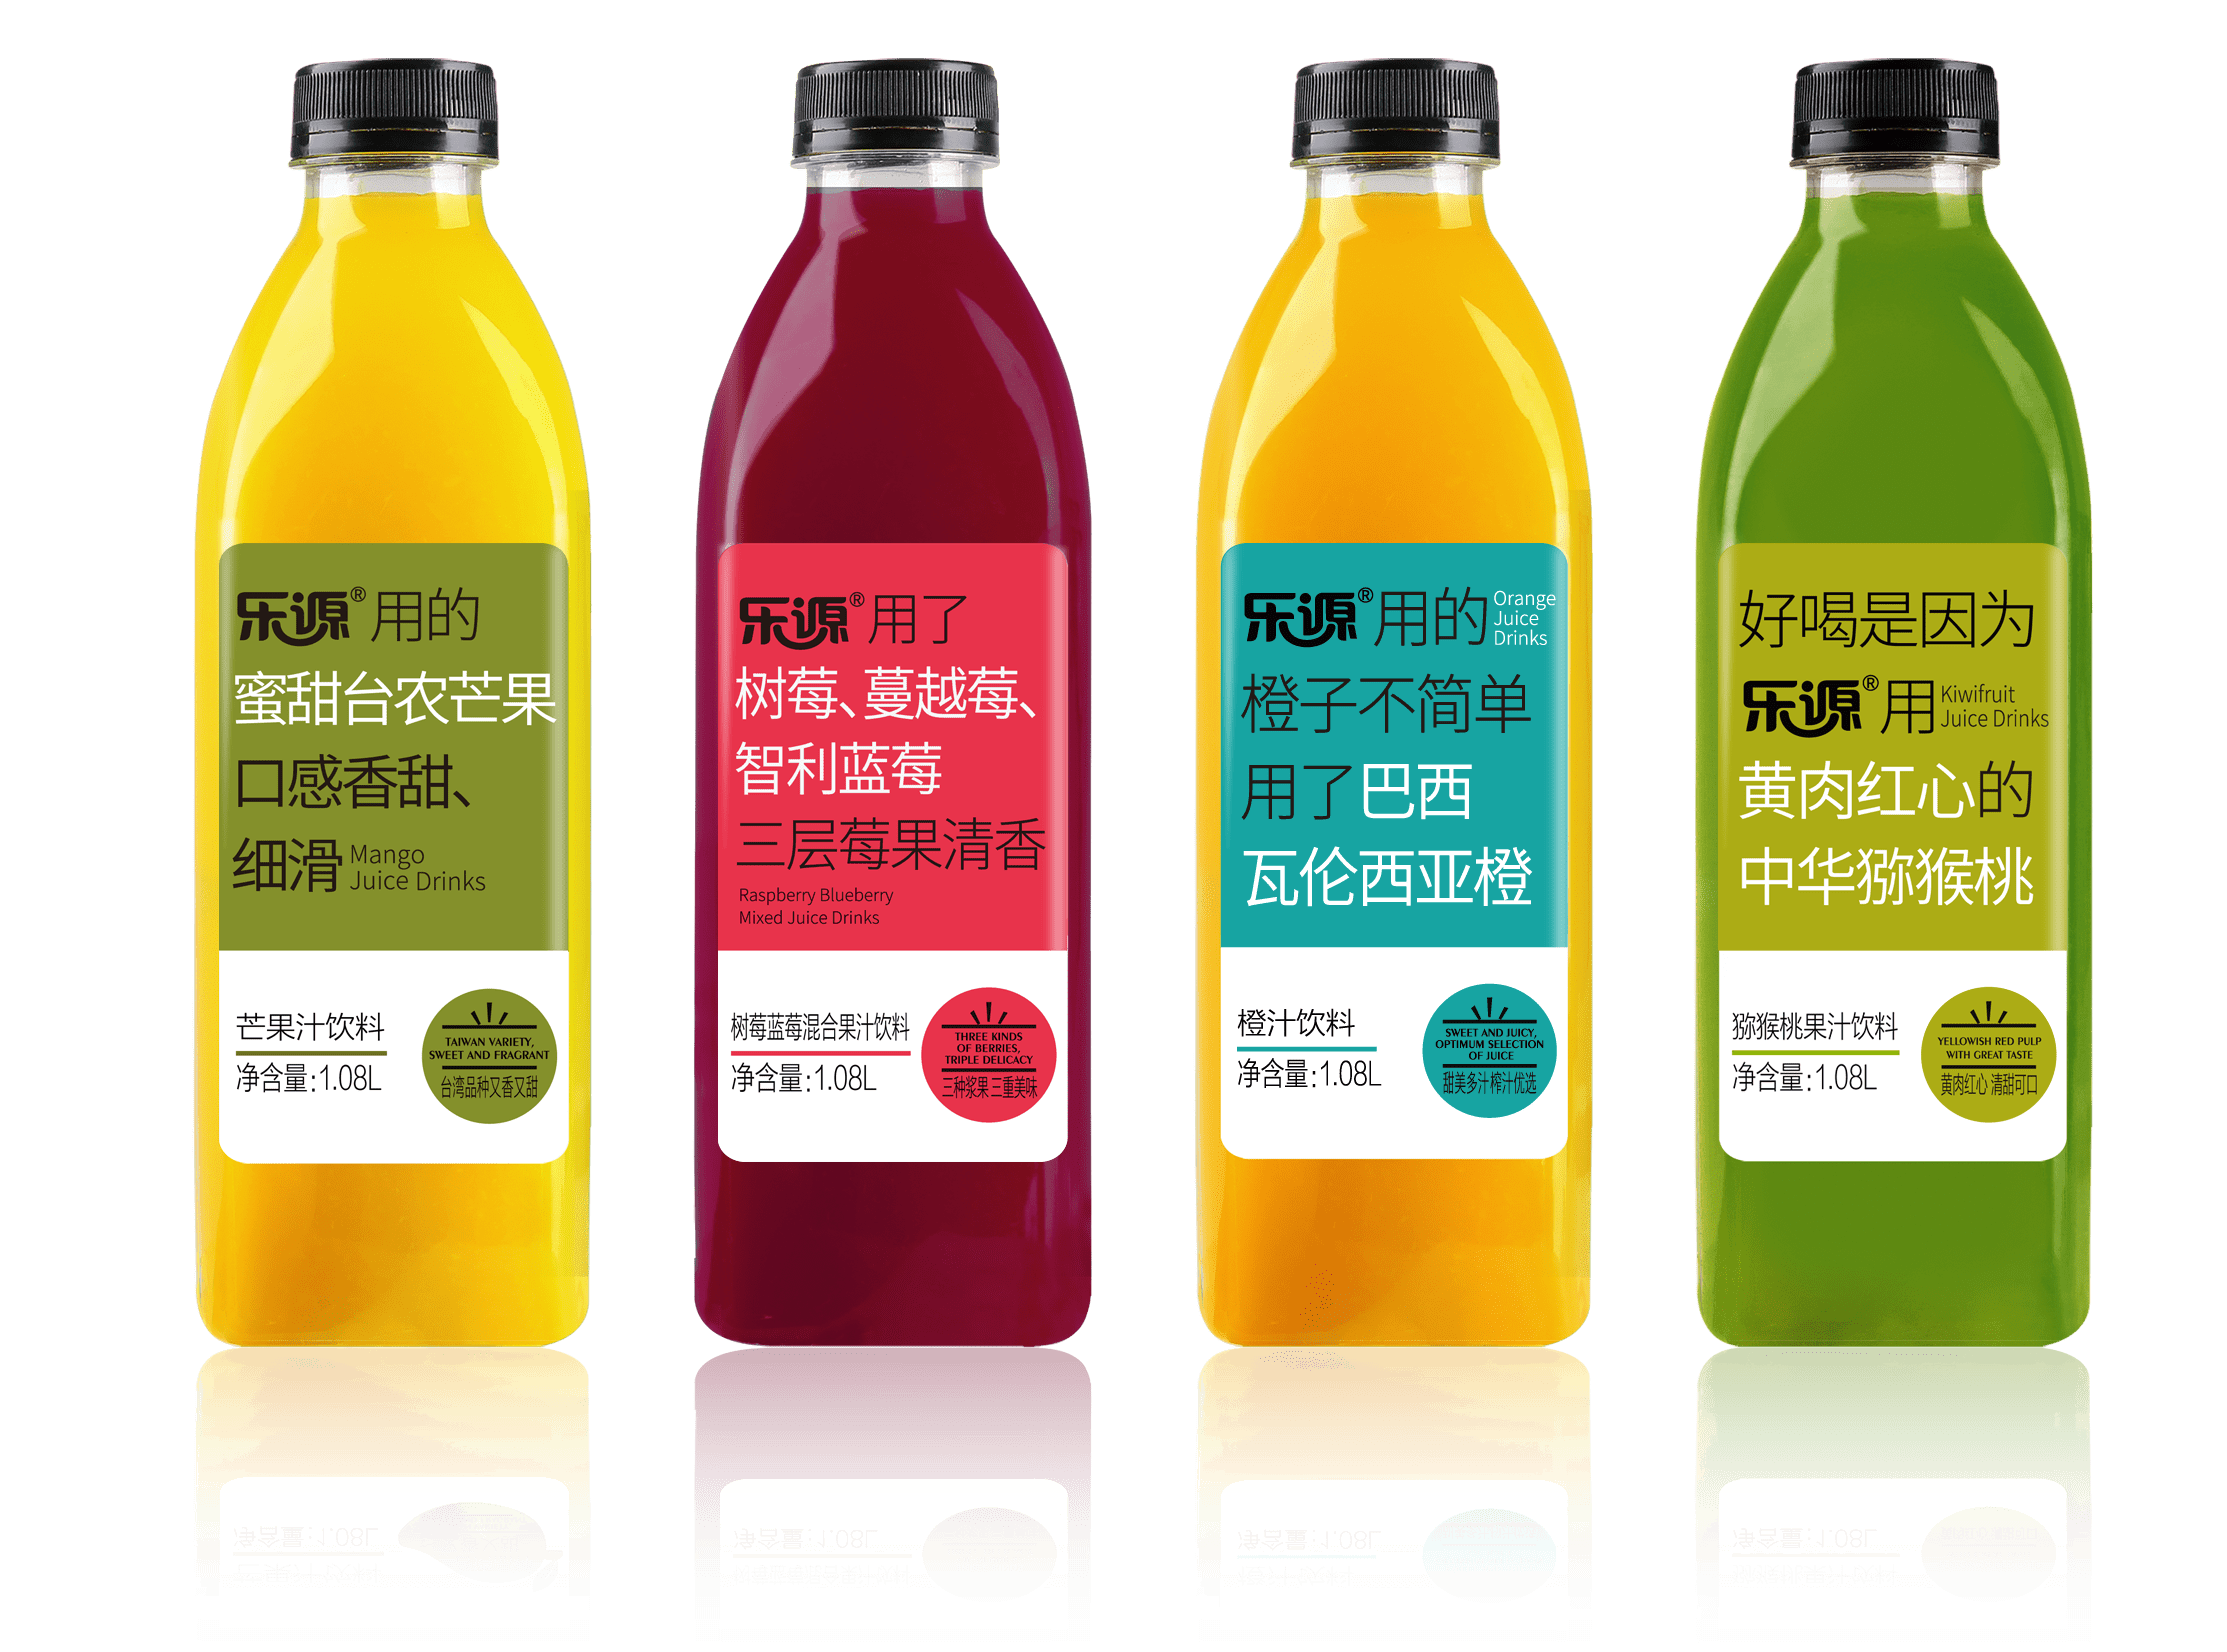 乐源合作品牌超200家以优质果汁平衡中国人的膳食结构